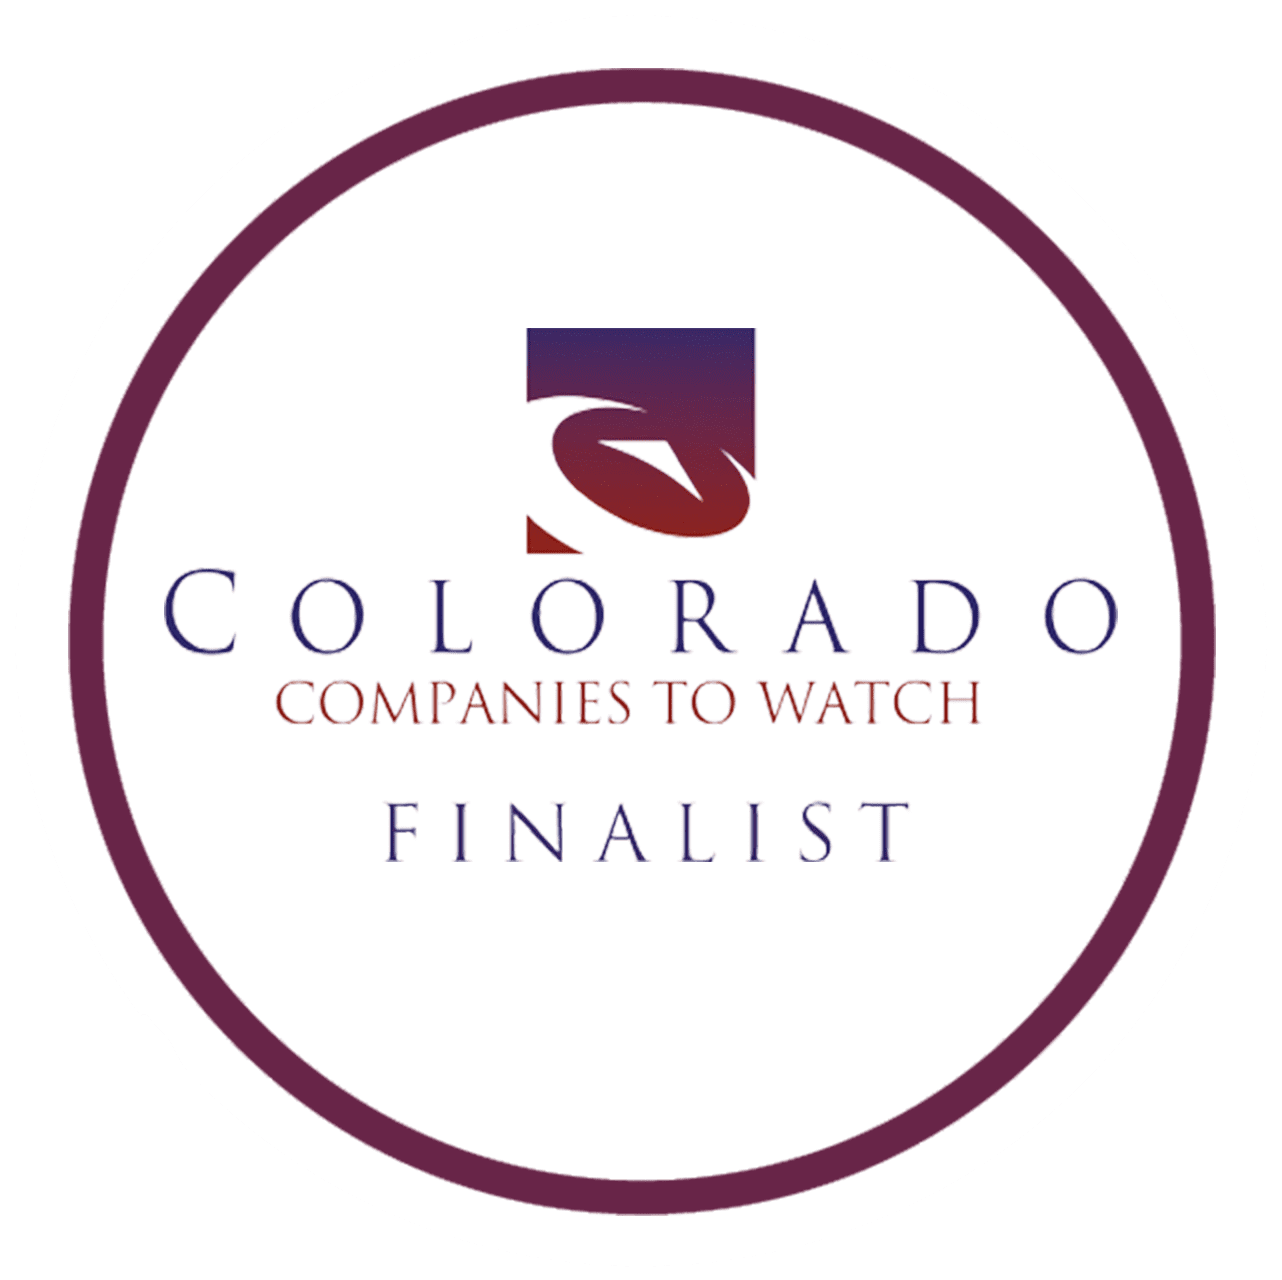 Colorado companies to watch finalist